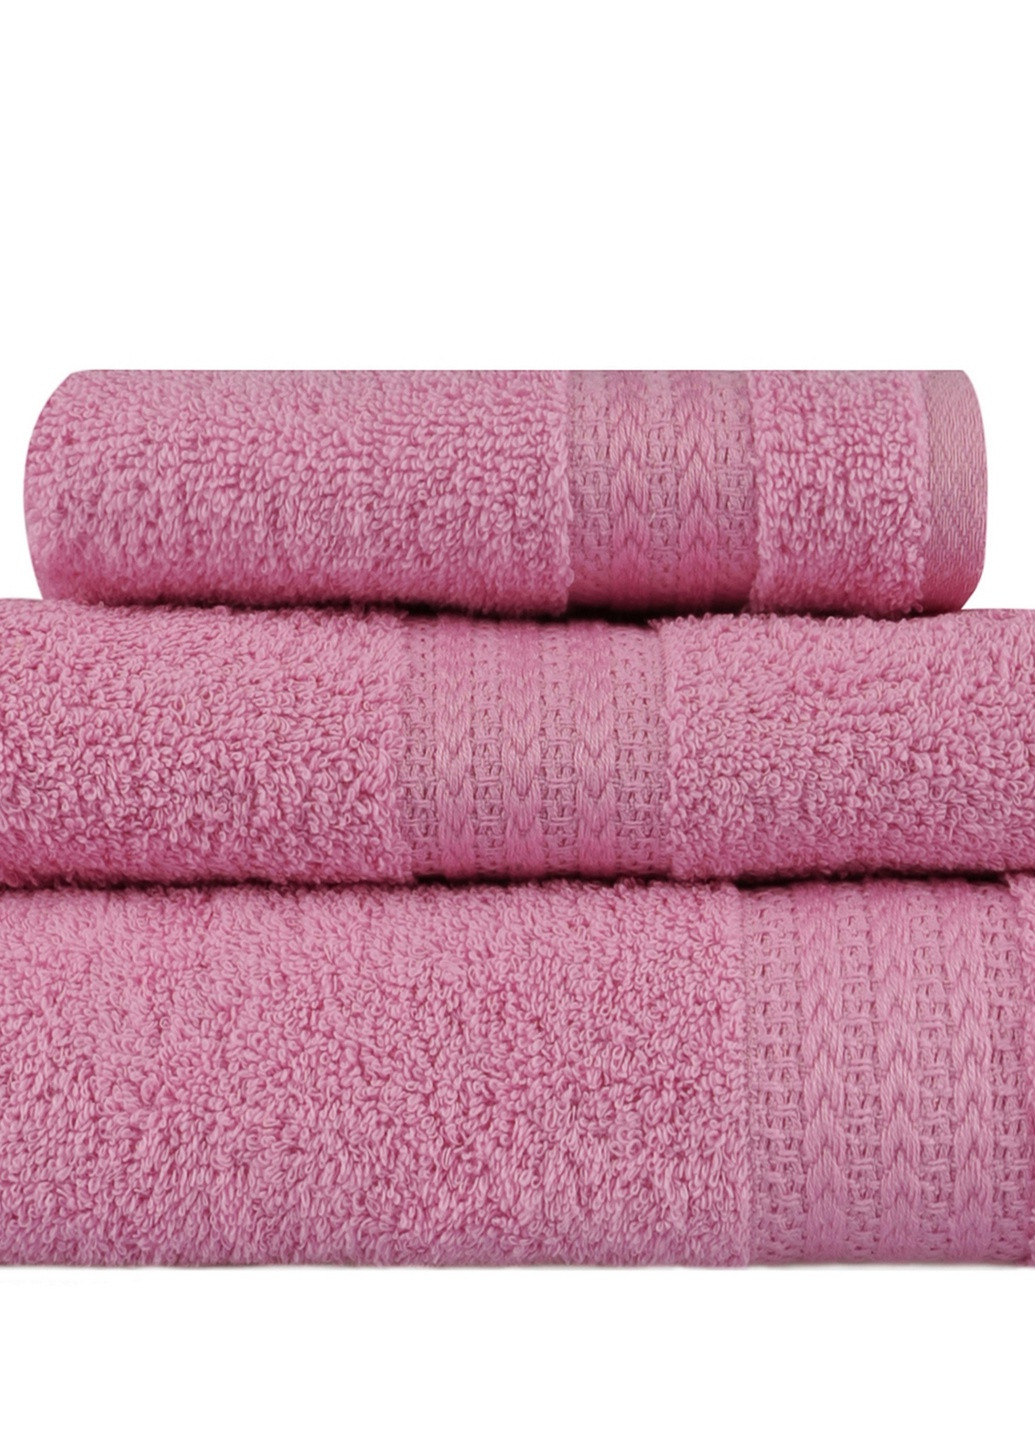 TURComFor набор турецких полотенец для ванной 3 шт (140x70 см, 90x50 см, 50х30 см ) розовый производство - Турция